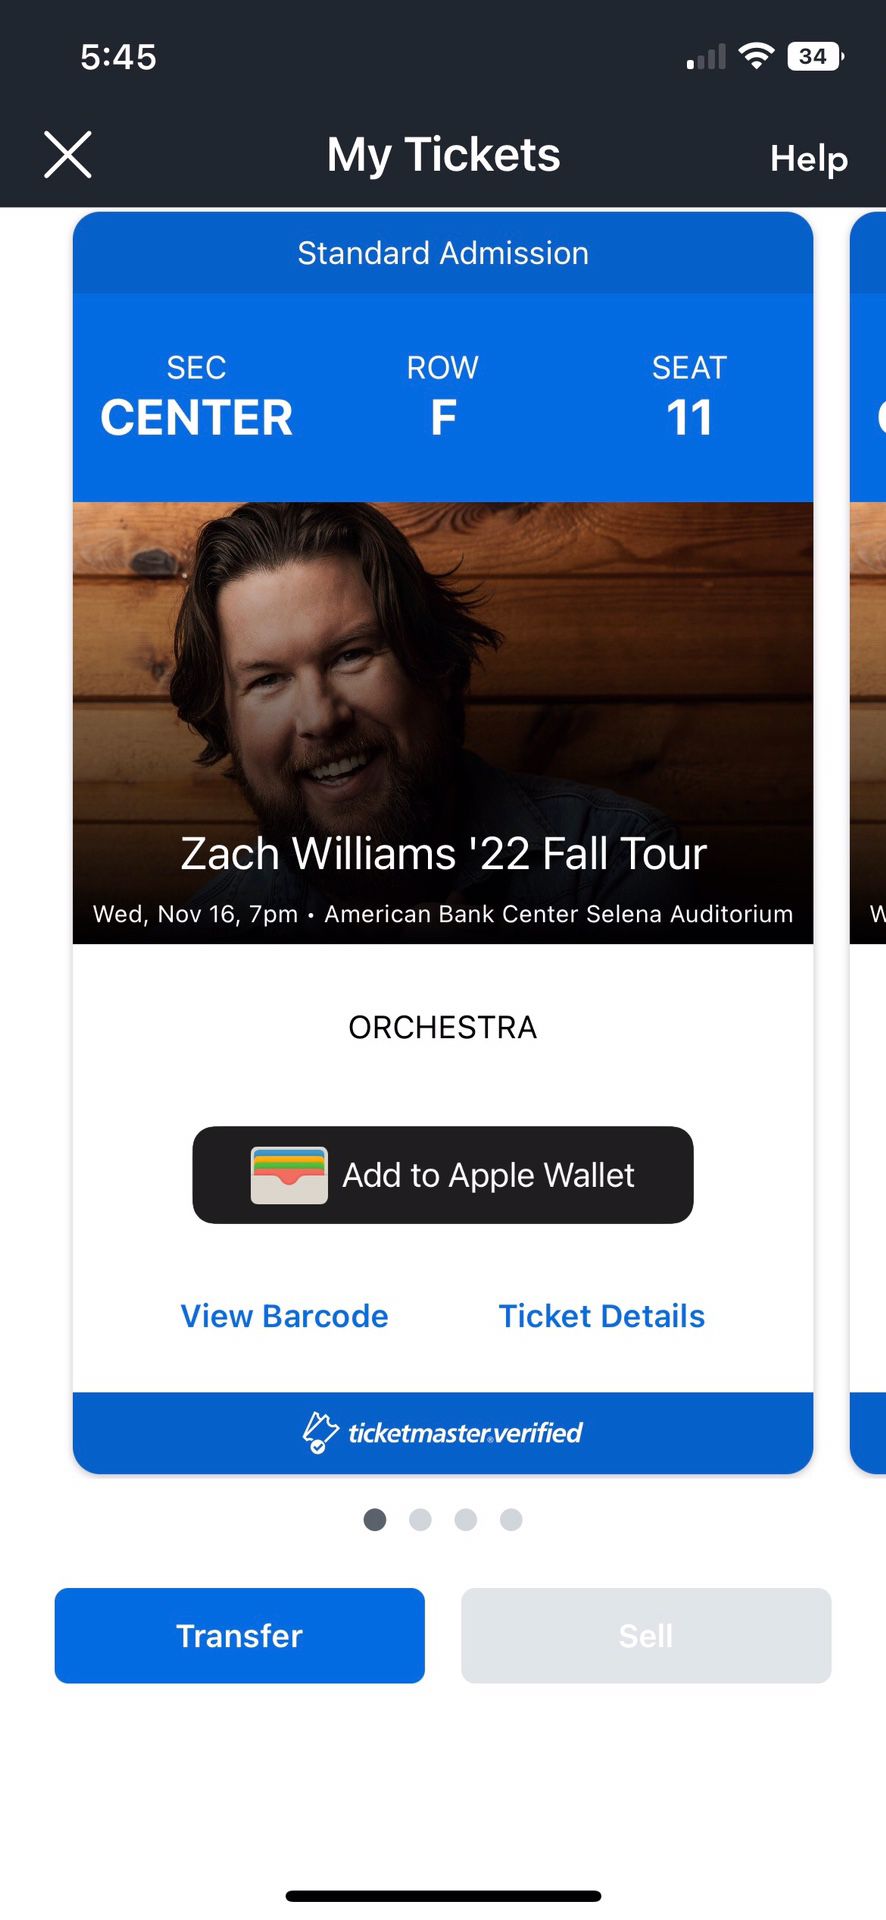 Zach Williams Concert Tickets